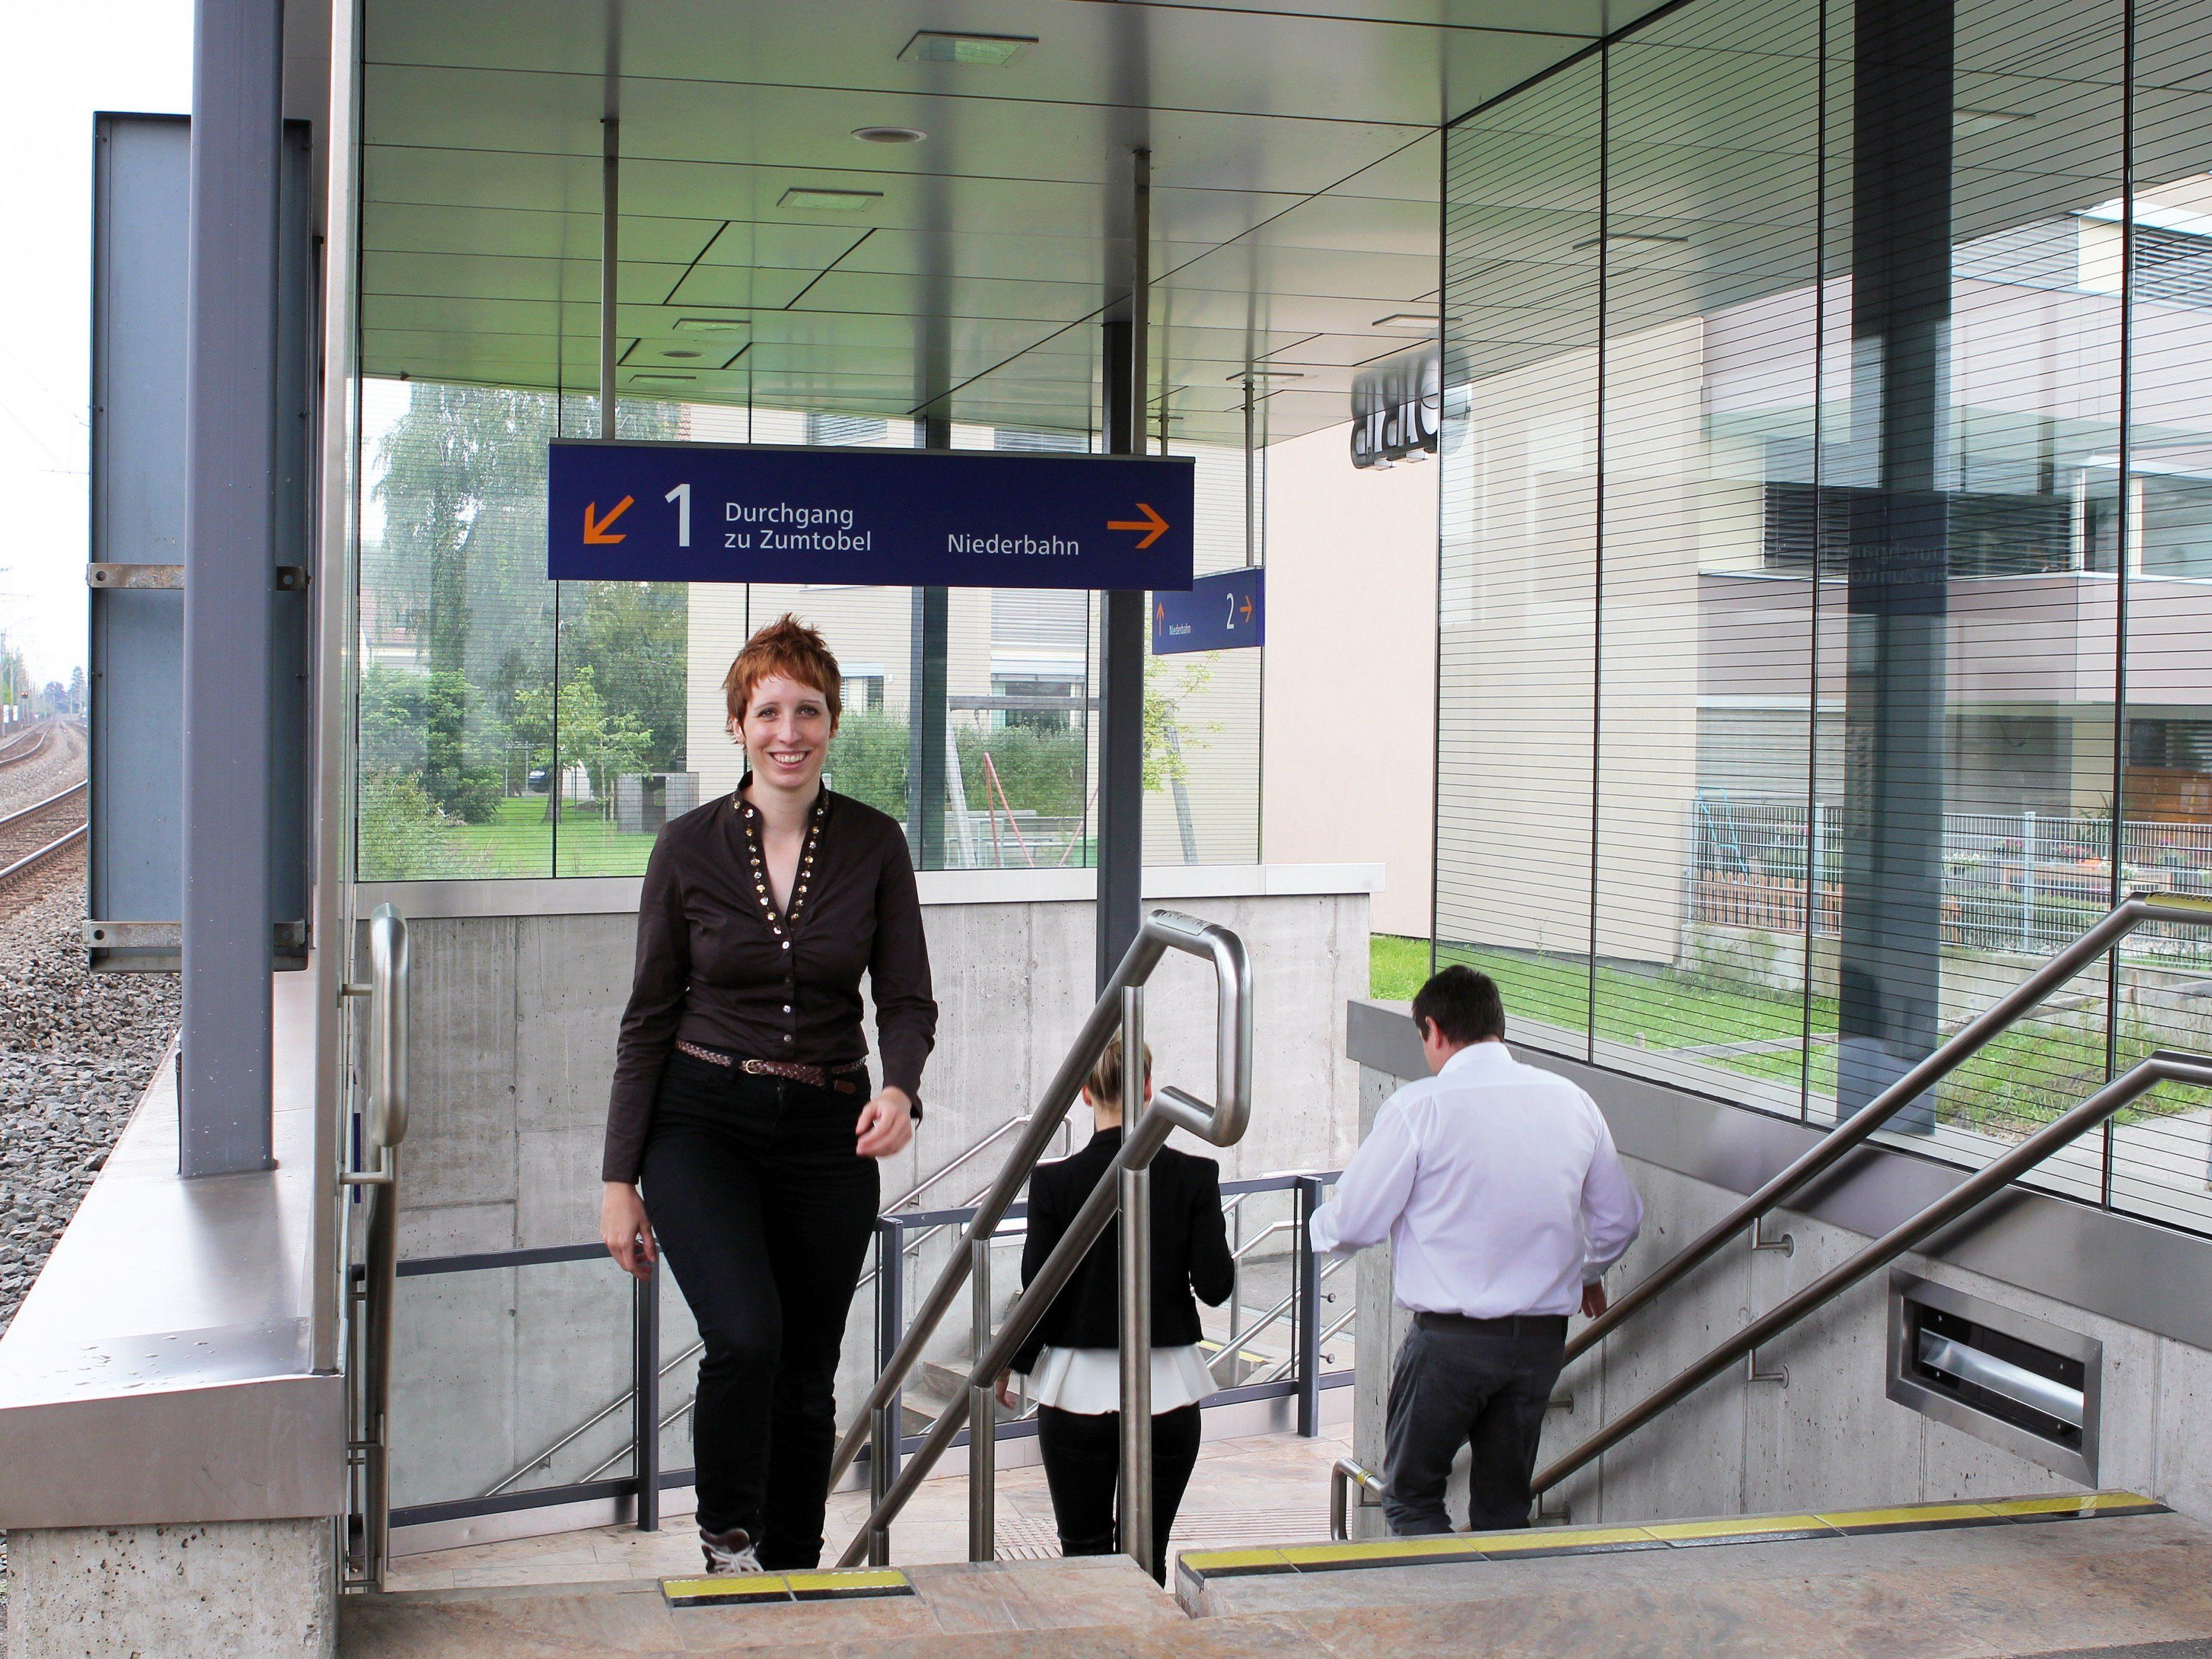 Das Zumtobel-Mobilitätsteam am Standort Dornbirn bewegt die Mitarbeiter zum Umsteigen auf umweltfreundlichere Verkehrsmittel.